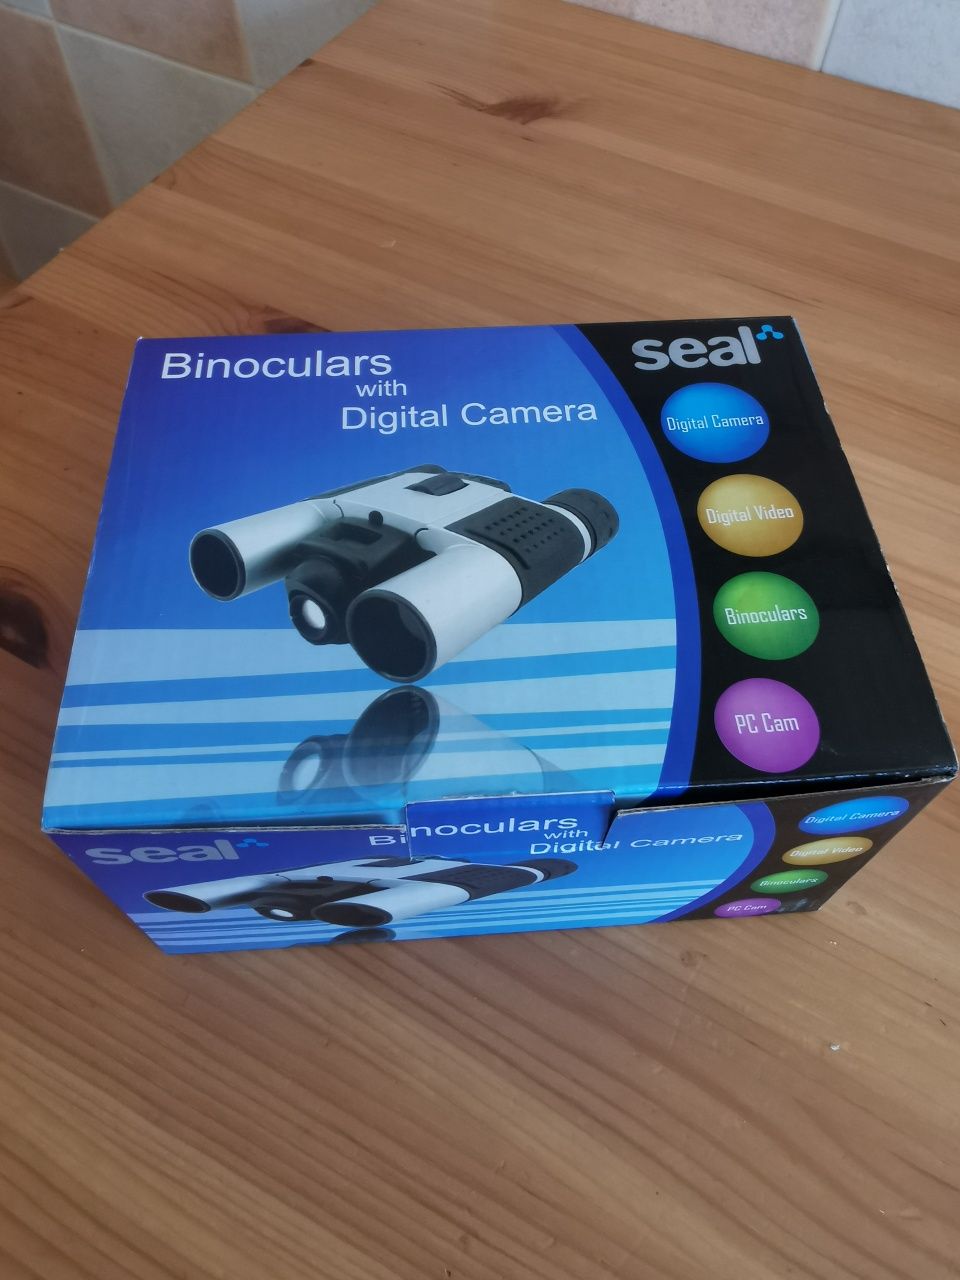 Binóculos Seal com câmera digital video e fotografia